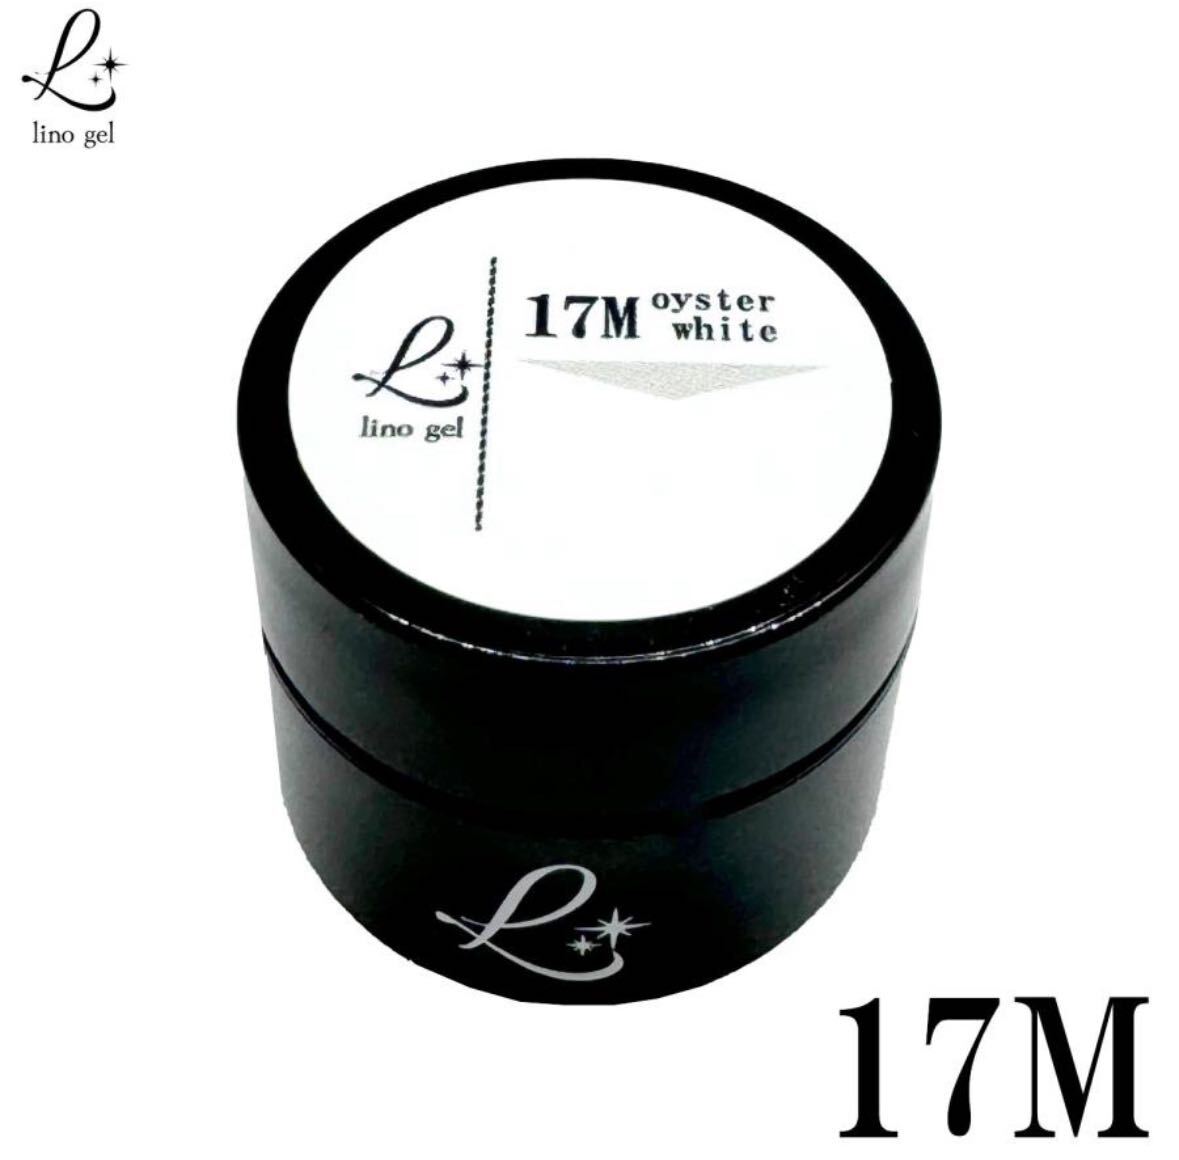 LinoGel リノジェル カラージェル 5g LED/UVライト対応 17M オイスターホワイト oysterwhite プロフェショナル ジェルネイル カラー ネイル